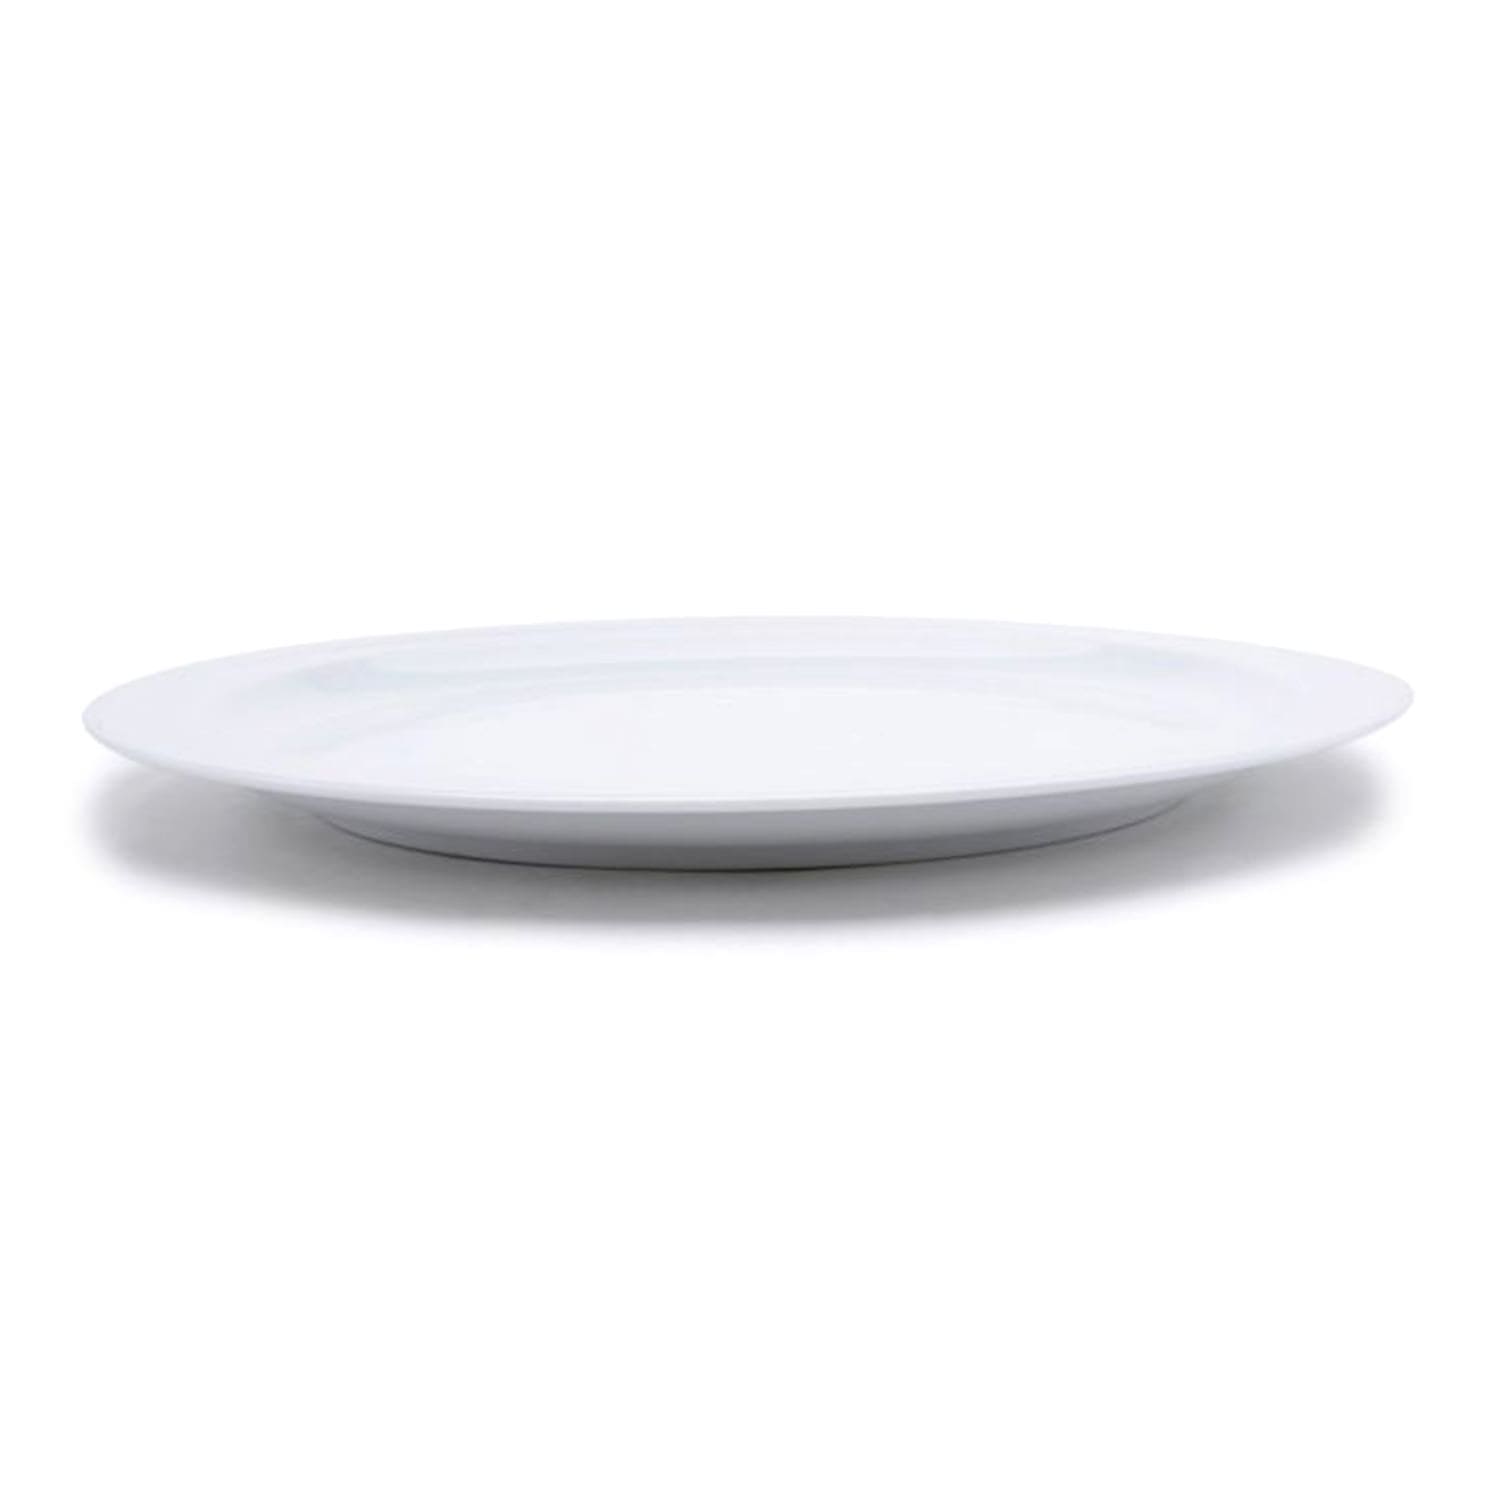 Dankotuwa Vessel Chop Plate - White, 960 g - 4125 - Jashanmal Home